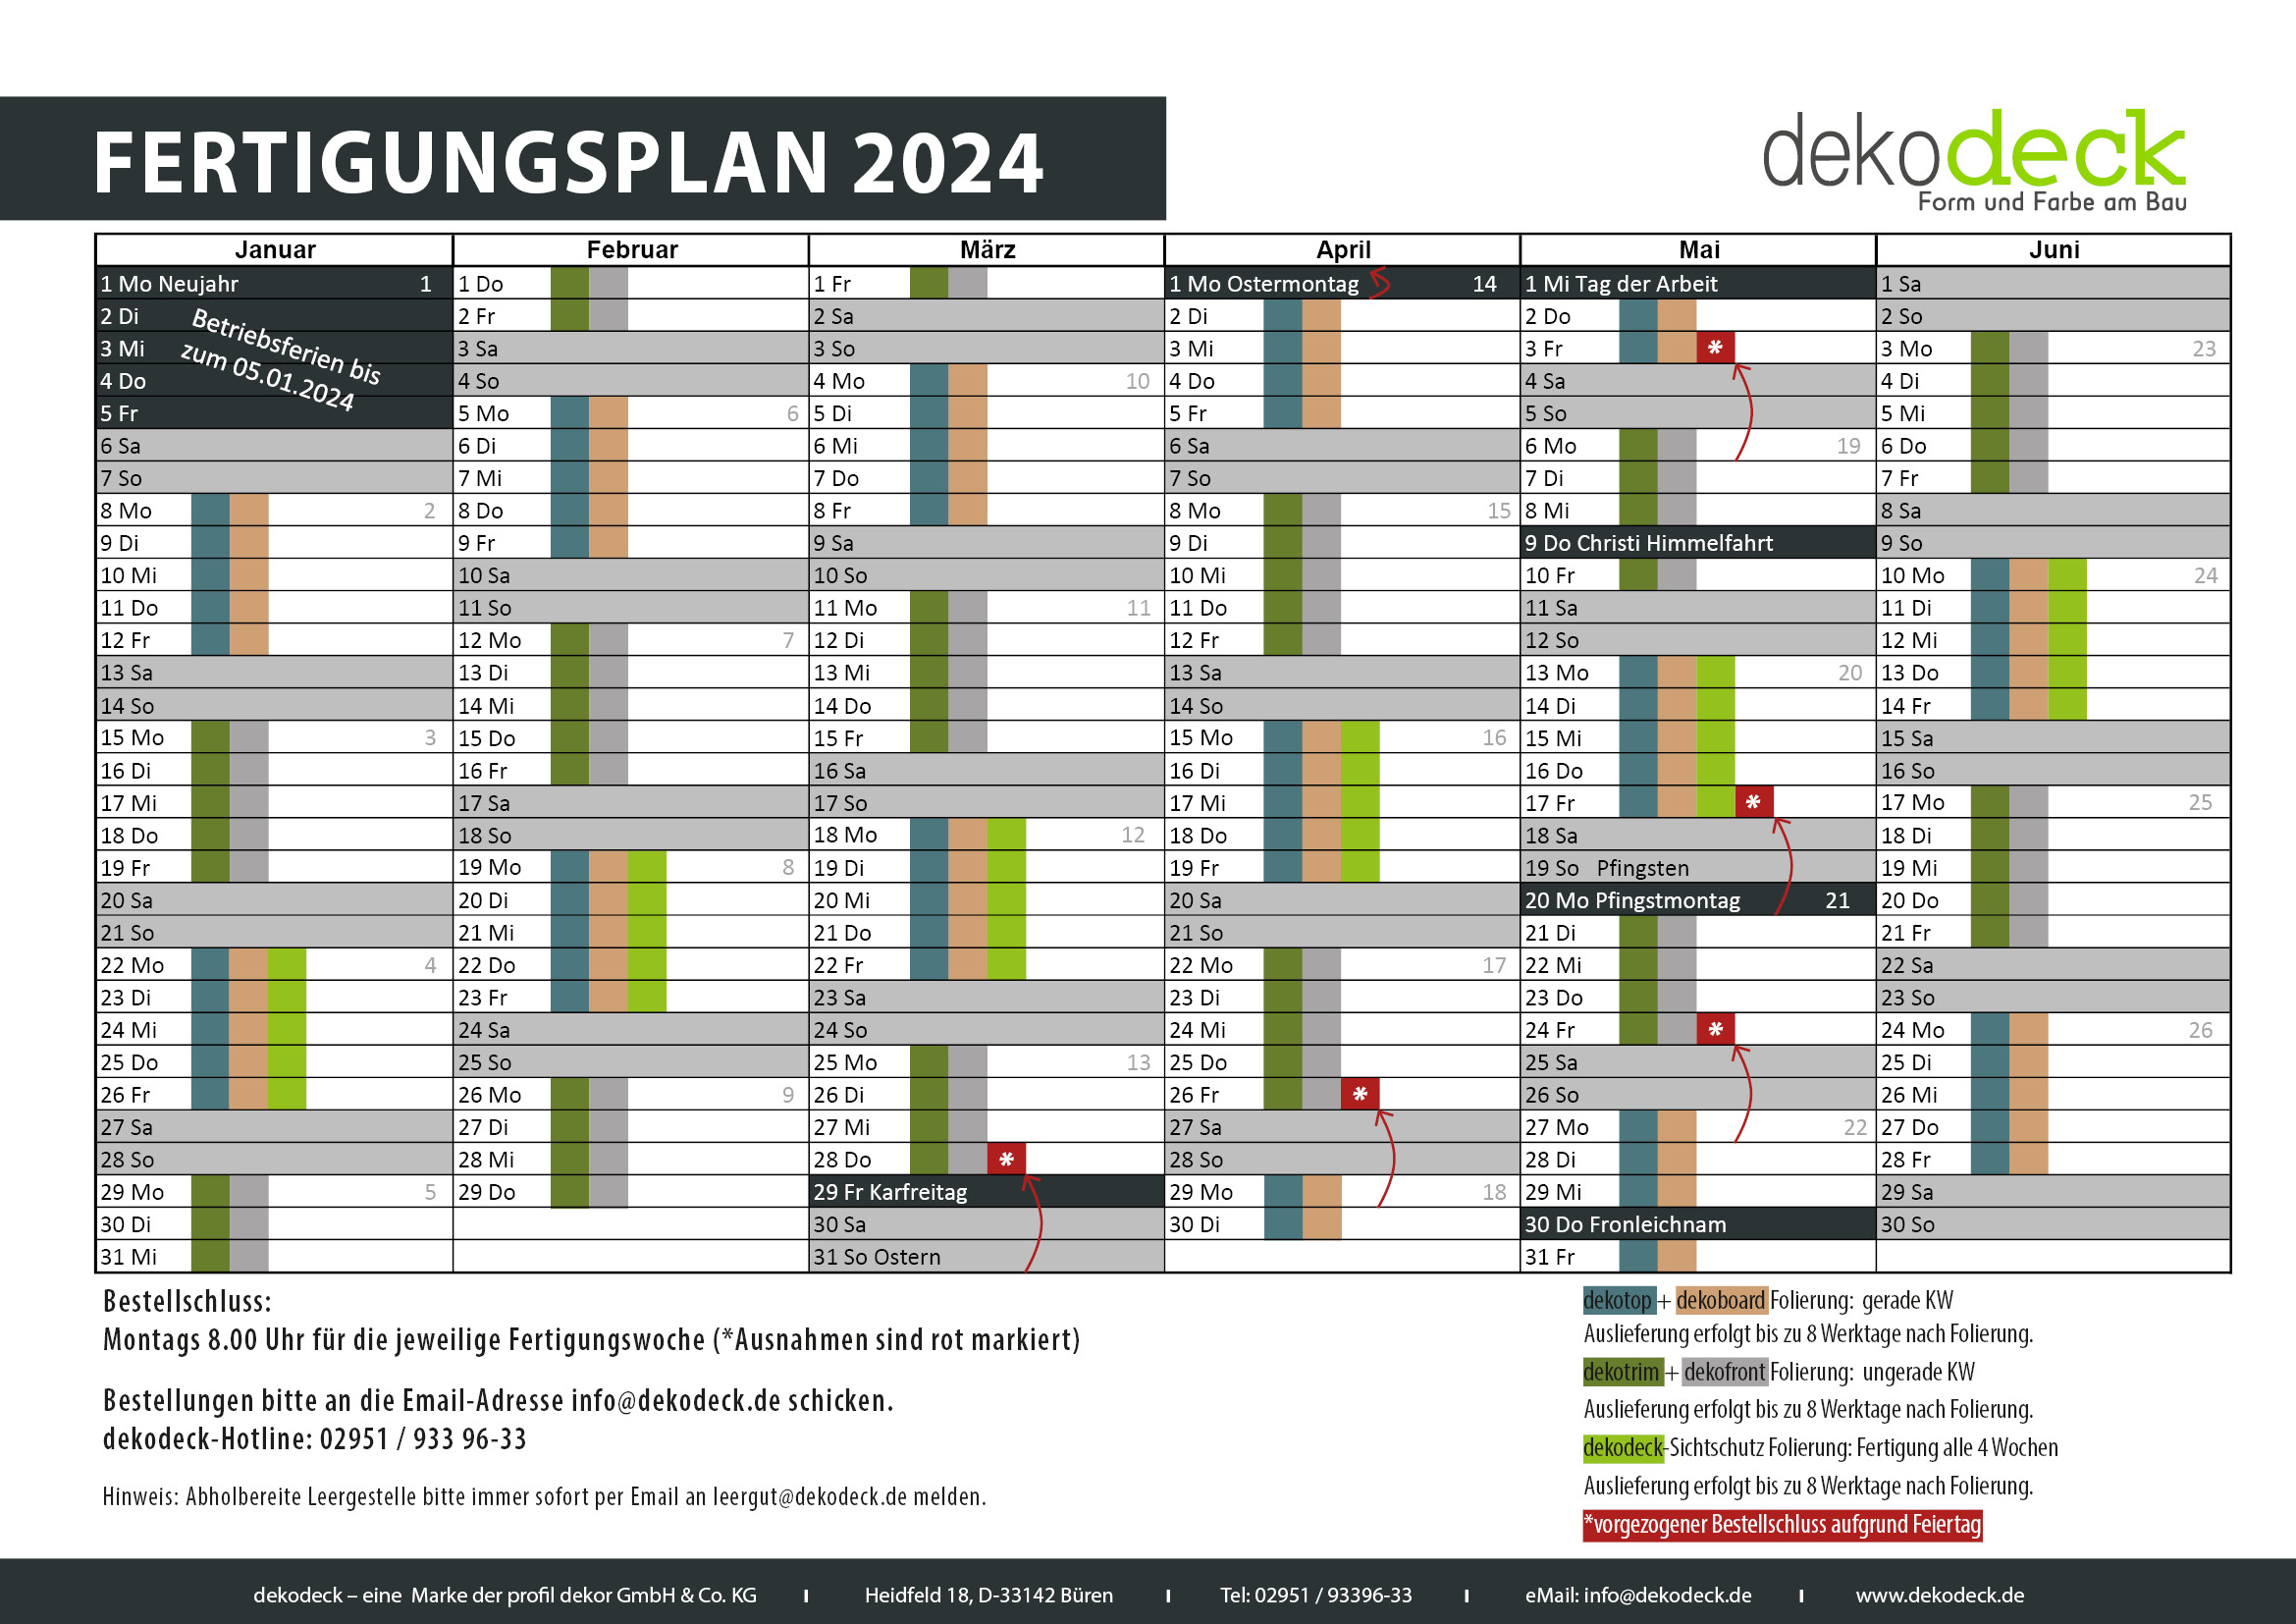 dekodeck Fertigungsplan 2024